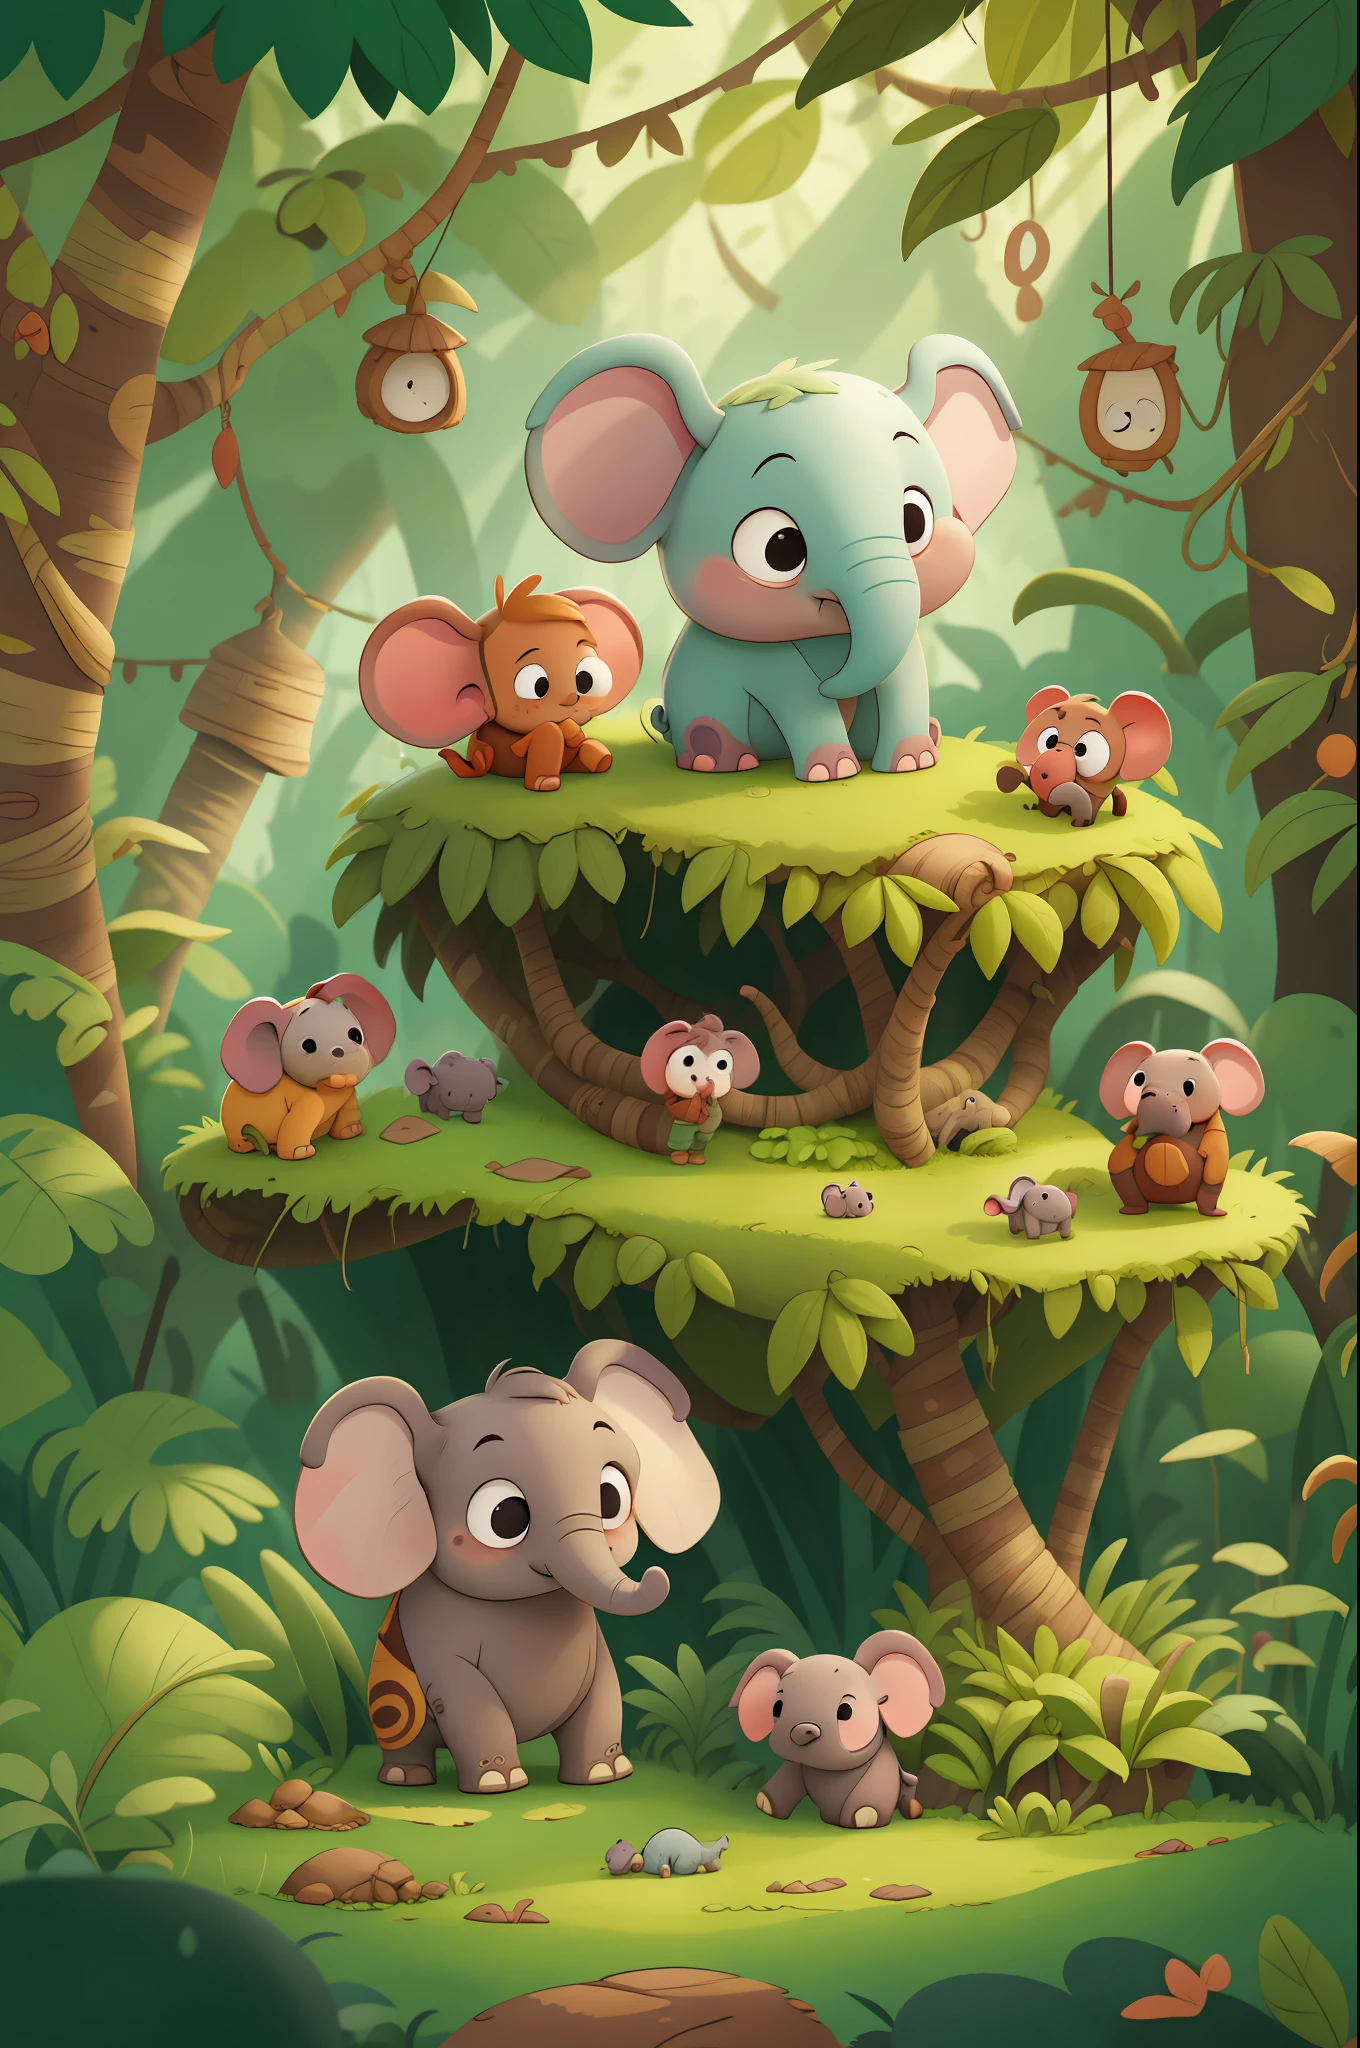 في يوم من الأيام كان هناك فيل صغير اسمه دوج يعيش في الغابة مع عائلته. كان دوغ فضوليًا جدًا وأحب استكشاف العالم من حوله. كتاب الأطفال, في أسلوب الرسوم المتحركة.